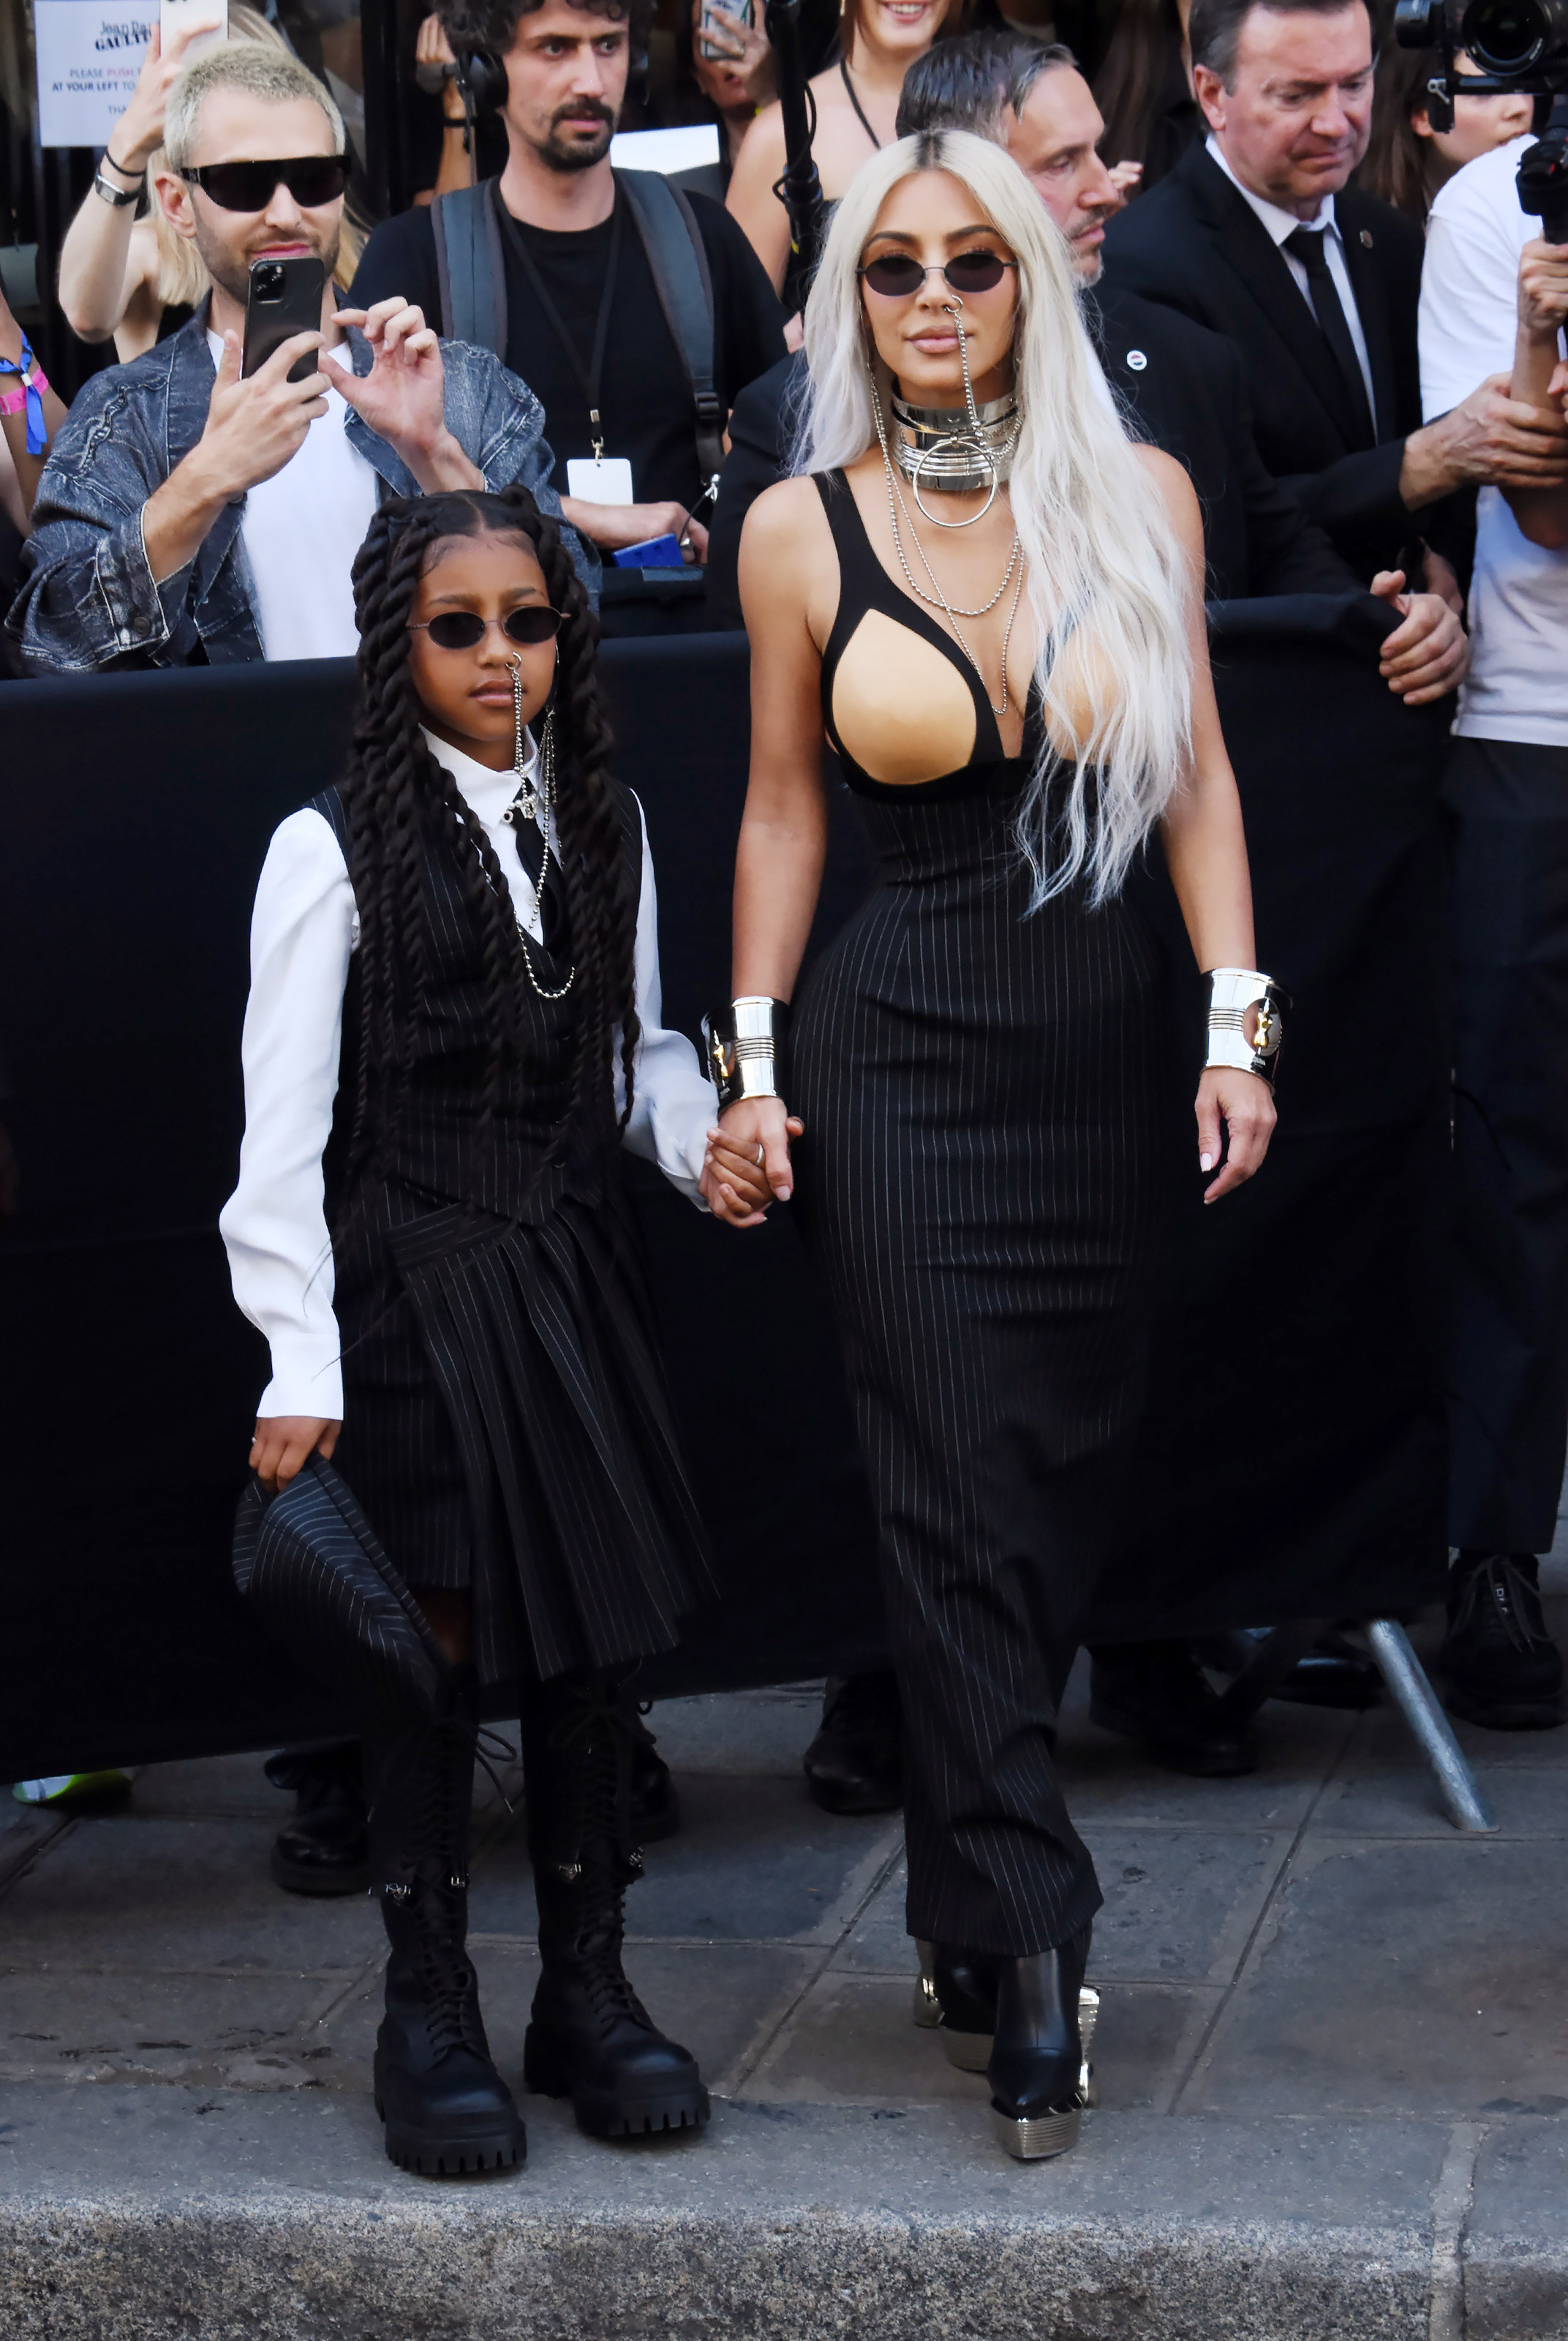 North West and Kim Kardashian posing in m atching looks at paris fashion week